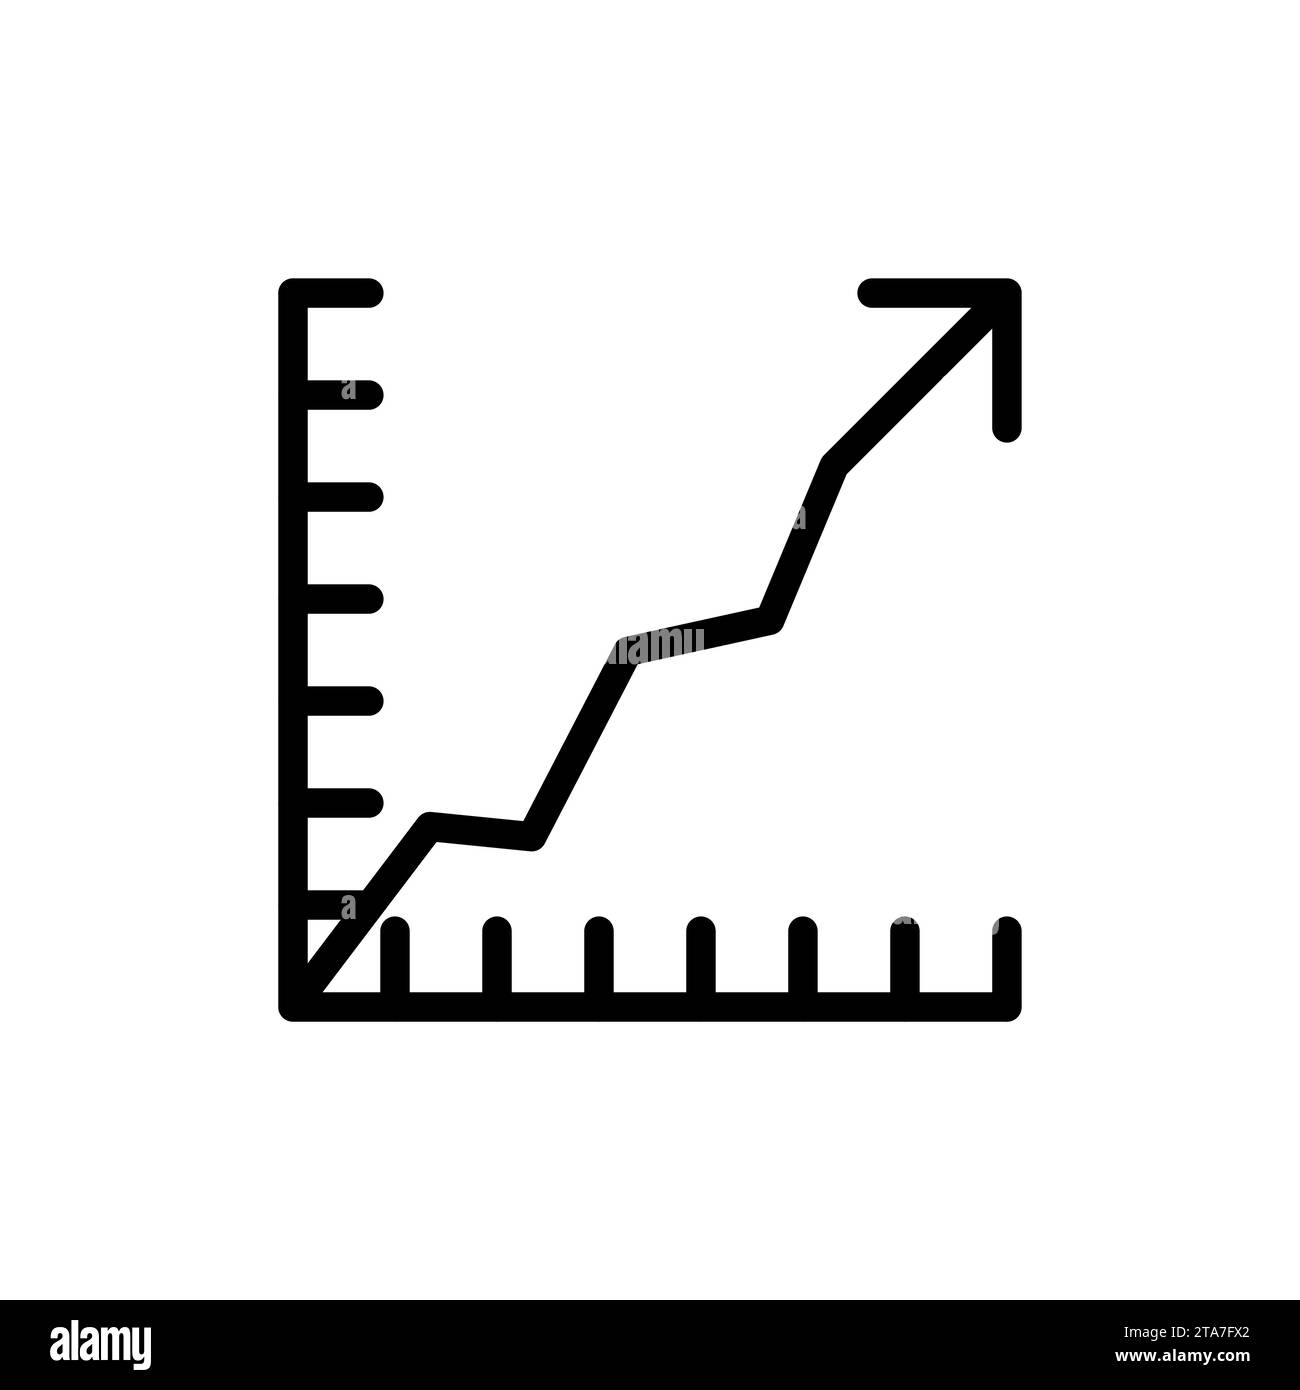 Icona di crescita economica isolata su sfondo bianco, infografica, crescita economia in calo, business, finanza. Icona grafico illustrazione vettoriale Illustrazione Vettoriale